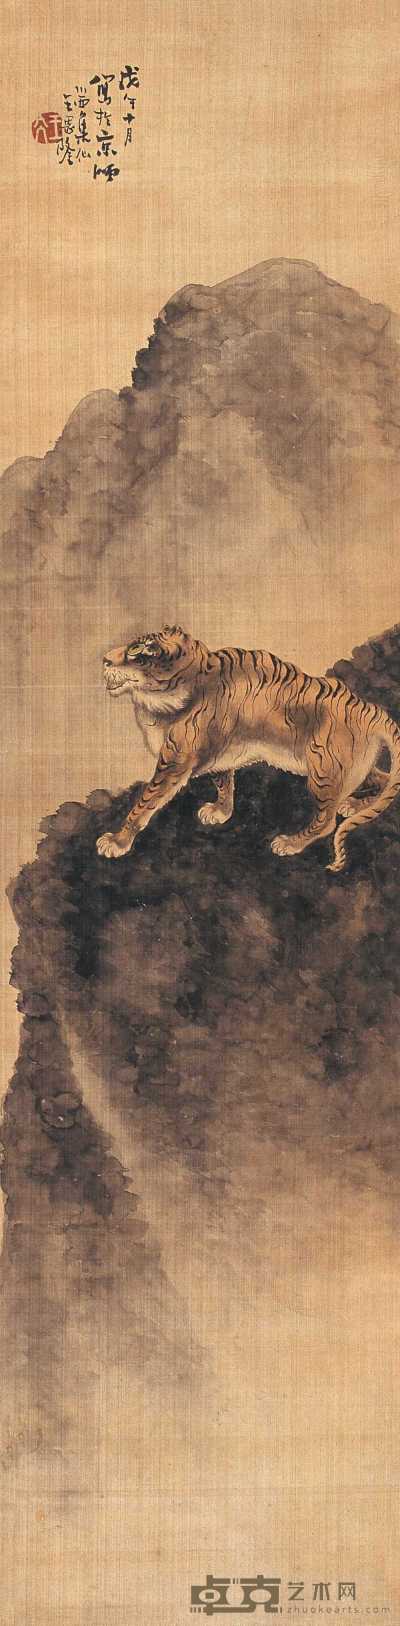 王恩隆 1858年作 虎吟图 立轴 123.5×30.5cm